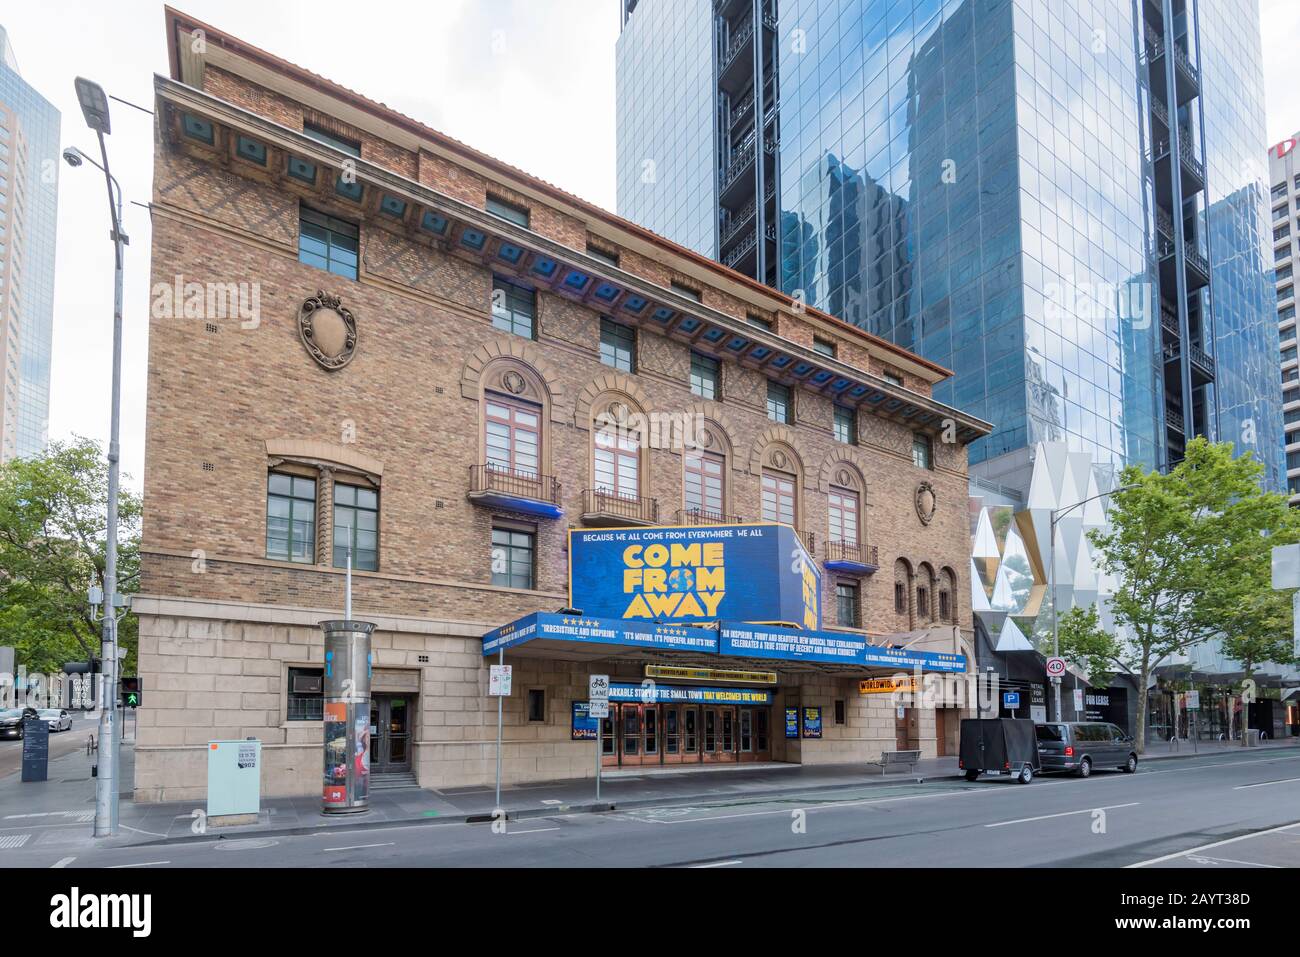 Le Melbourne Comedy Theatre a été construit en 1928 et conçu dans le style espagnol avec un extérieur de style florentin et des balcons en fer forgé Banque D'Images